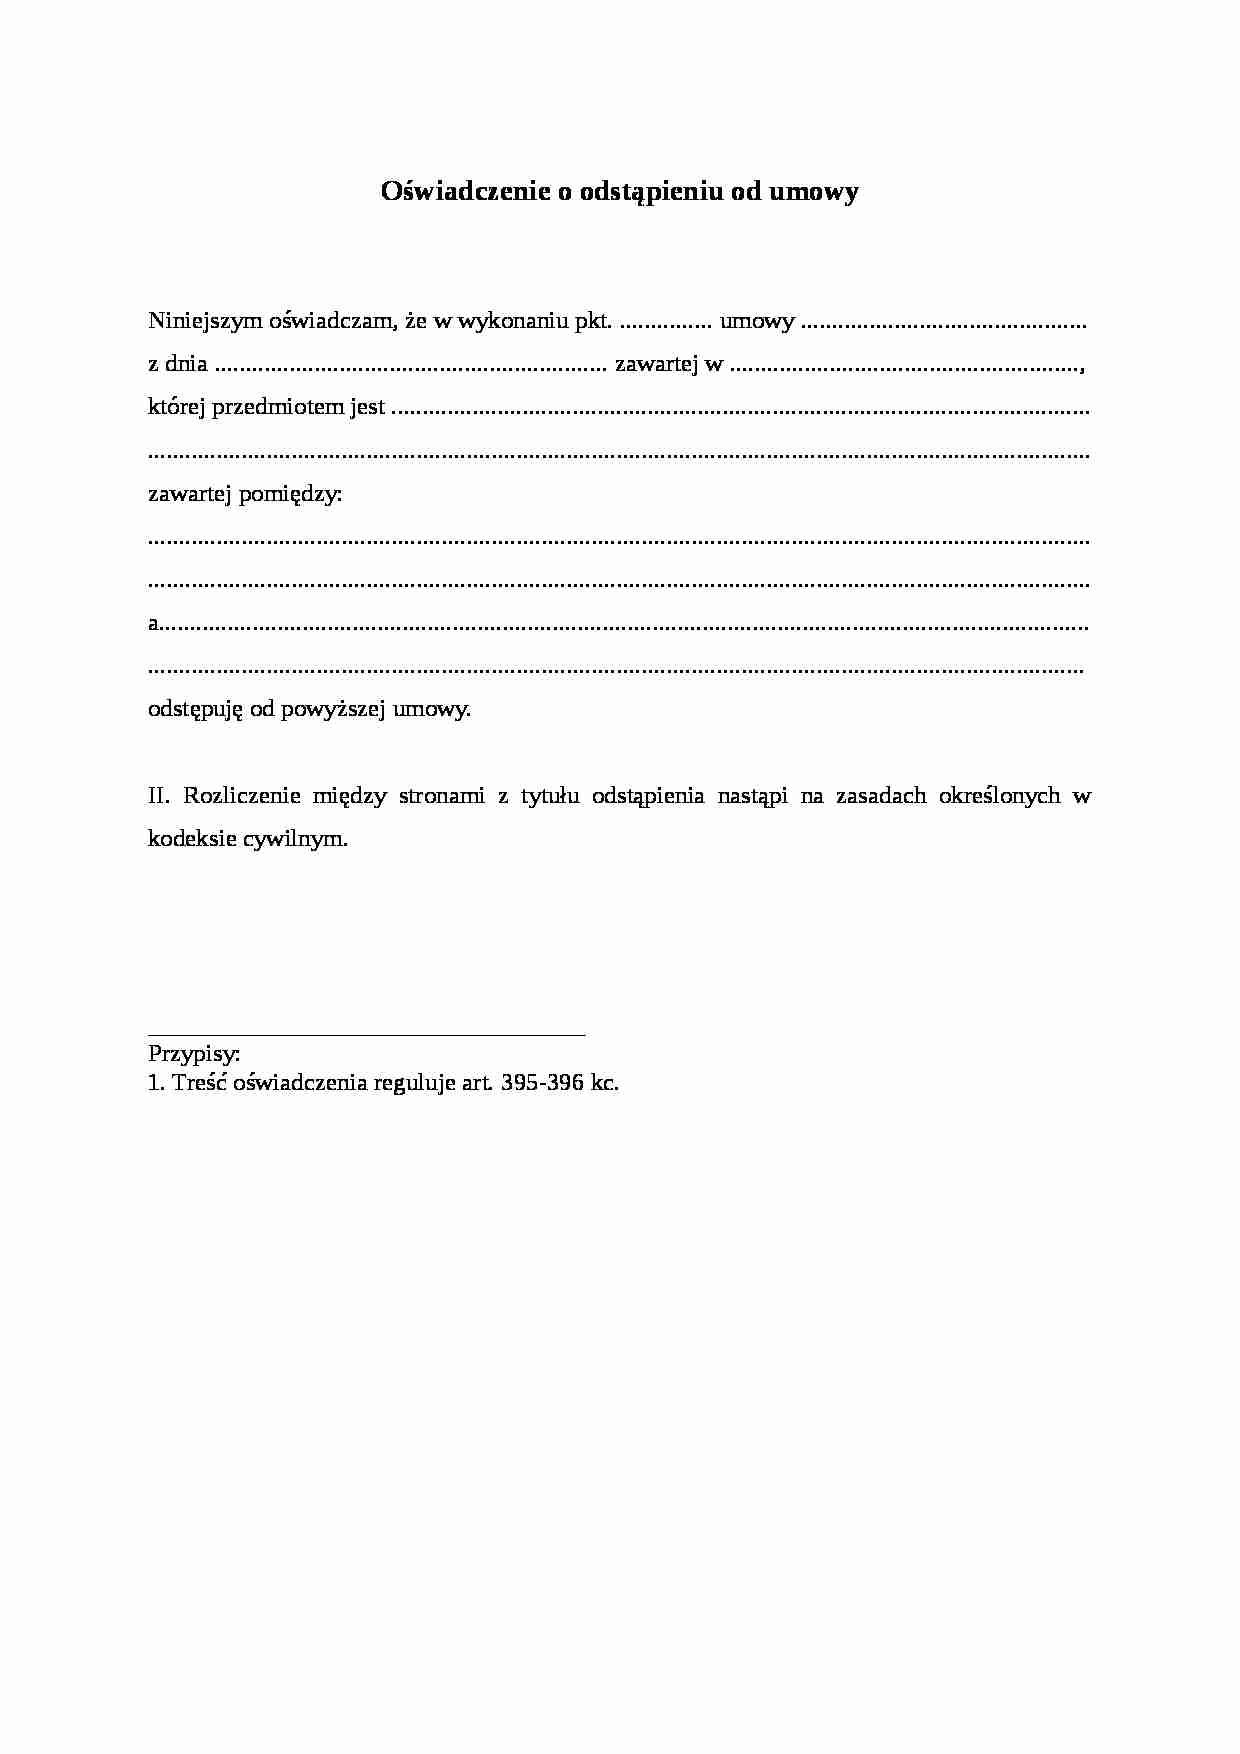 Wzór-Oświadczenie o odstąpieniu od umowy - strona 1